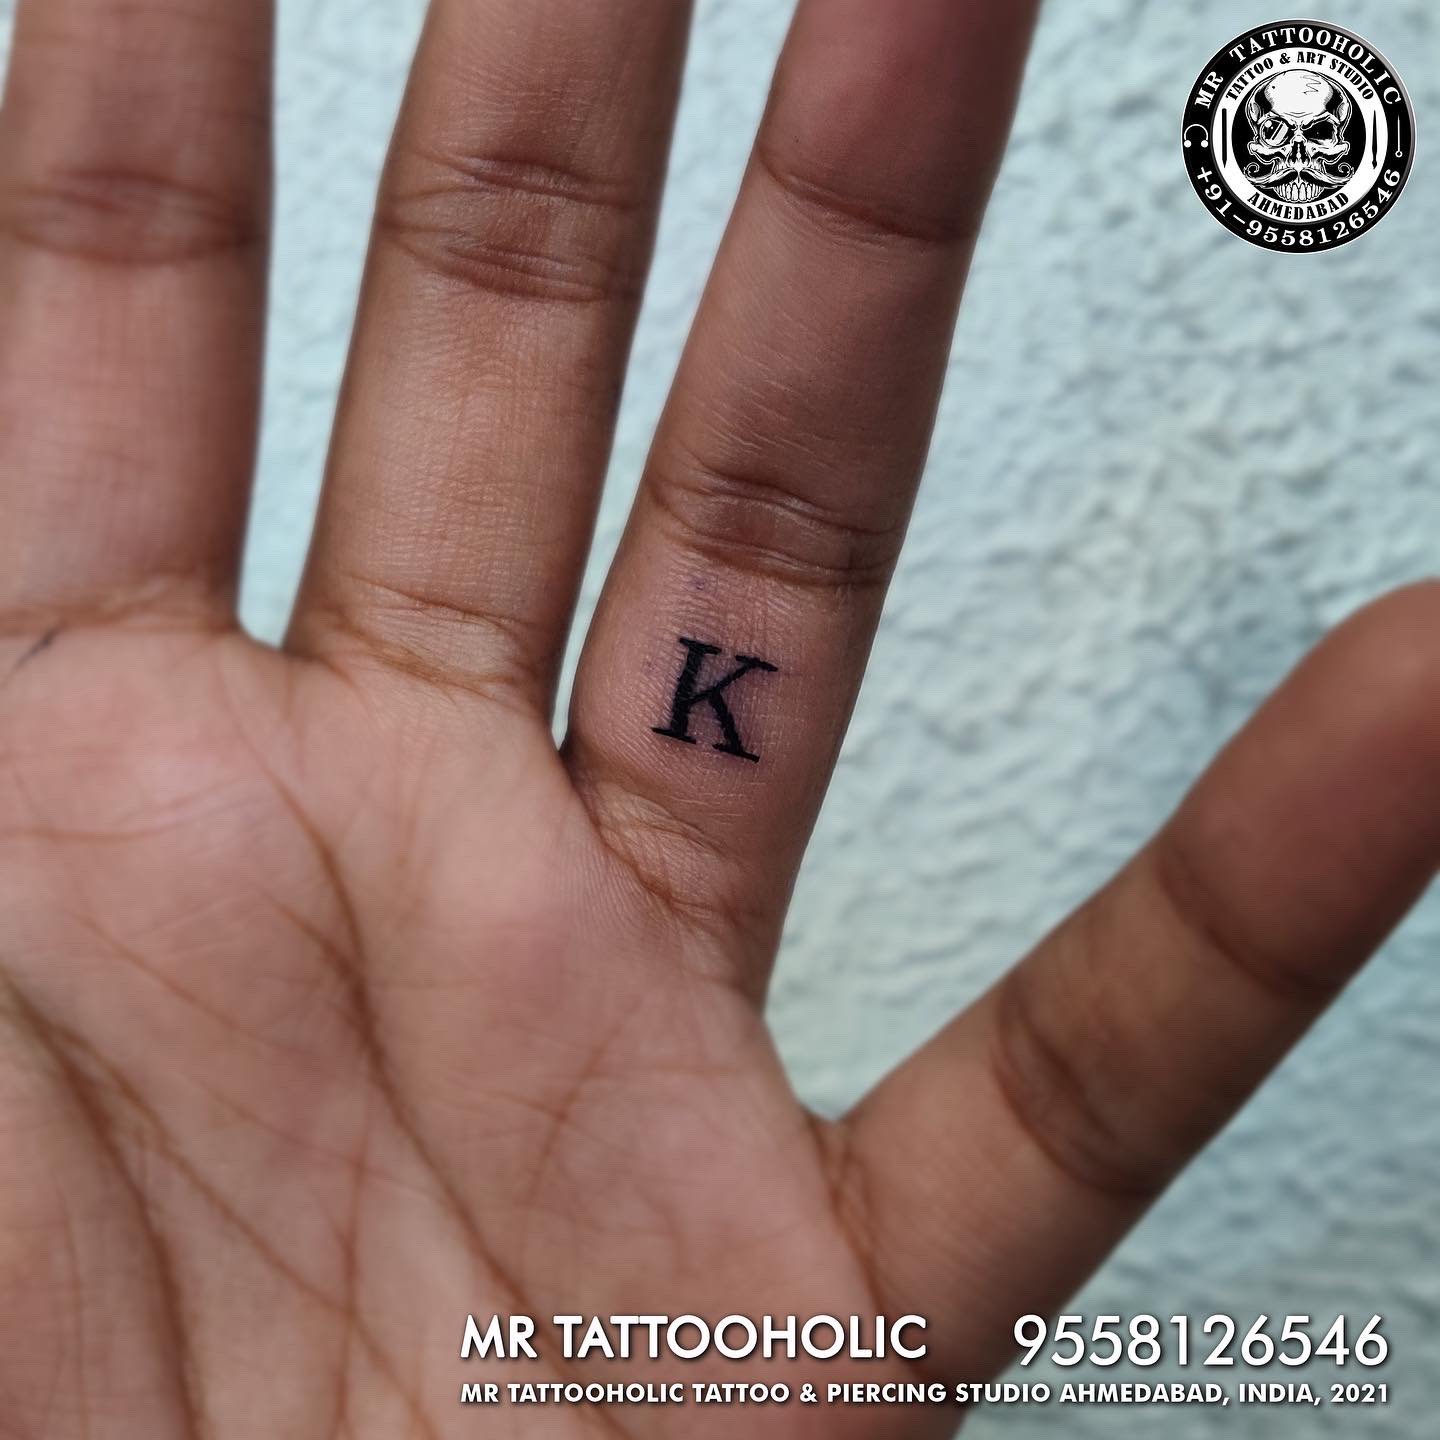 ✨K ✨with👑 Crown 👑 finger tattoo design #trending @46_mukesh_tattoo_artist  @instagram @instagramforbusiness @46_mukesh_tattoo_artist | Instagram